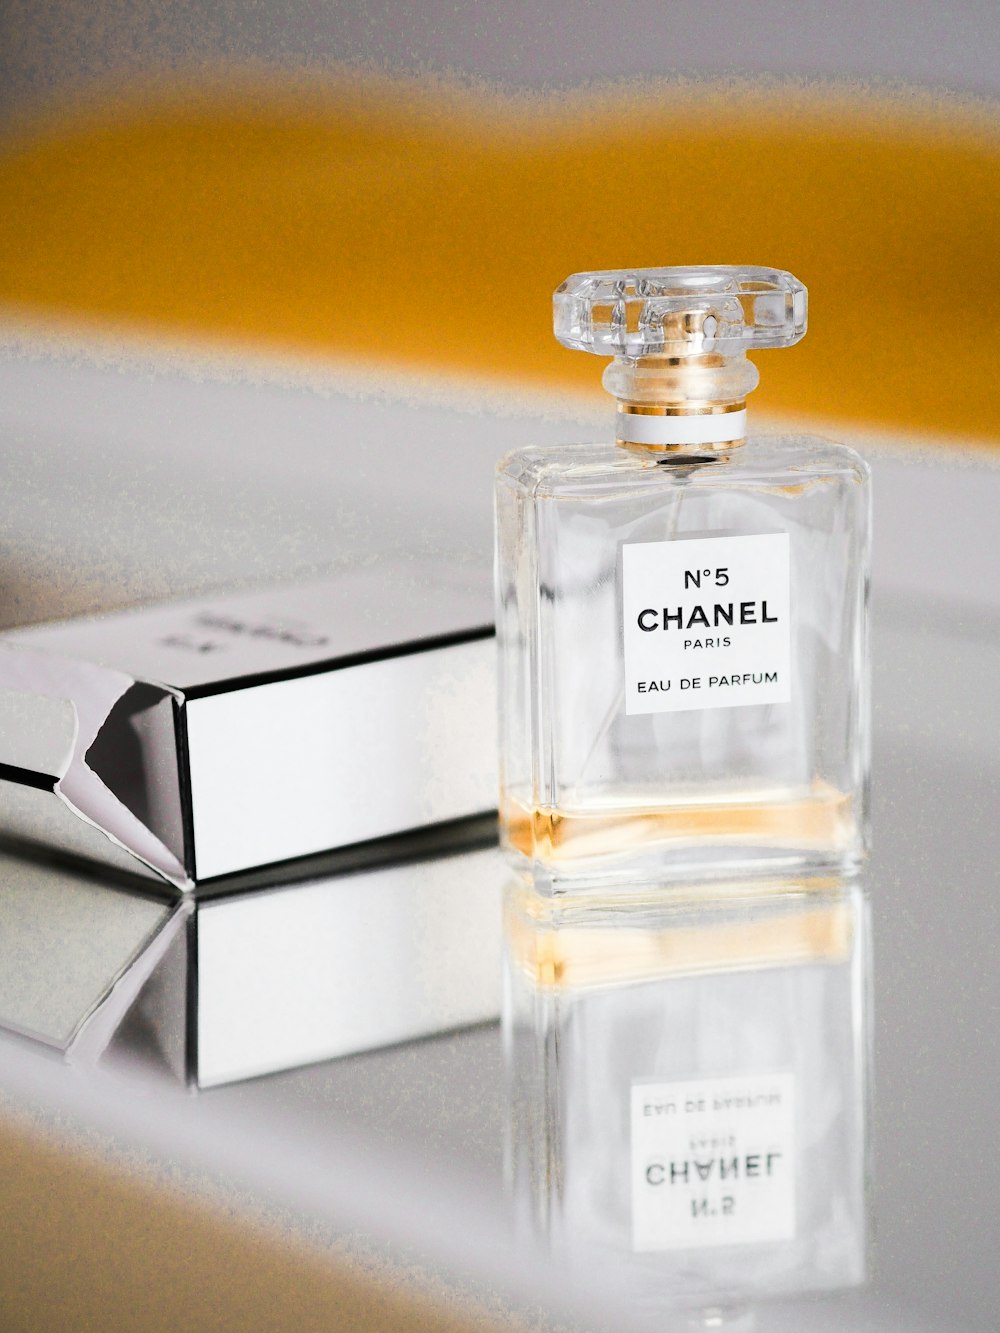 Chanel No. 5 Paris-Eau De Parfum 100ml / 3.4Fl Oz Empty Glass Spray Bottle